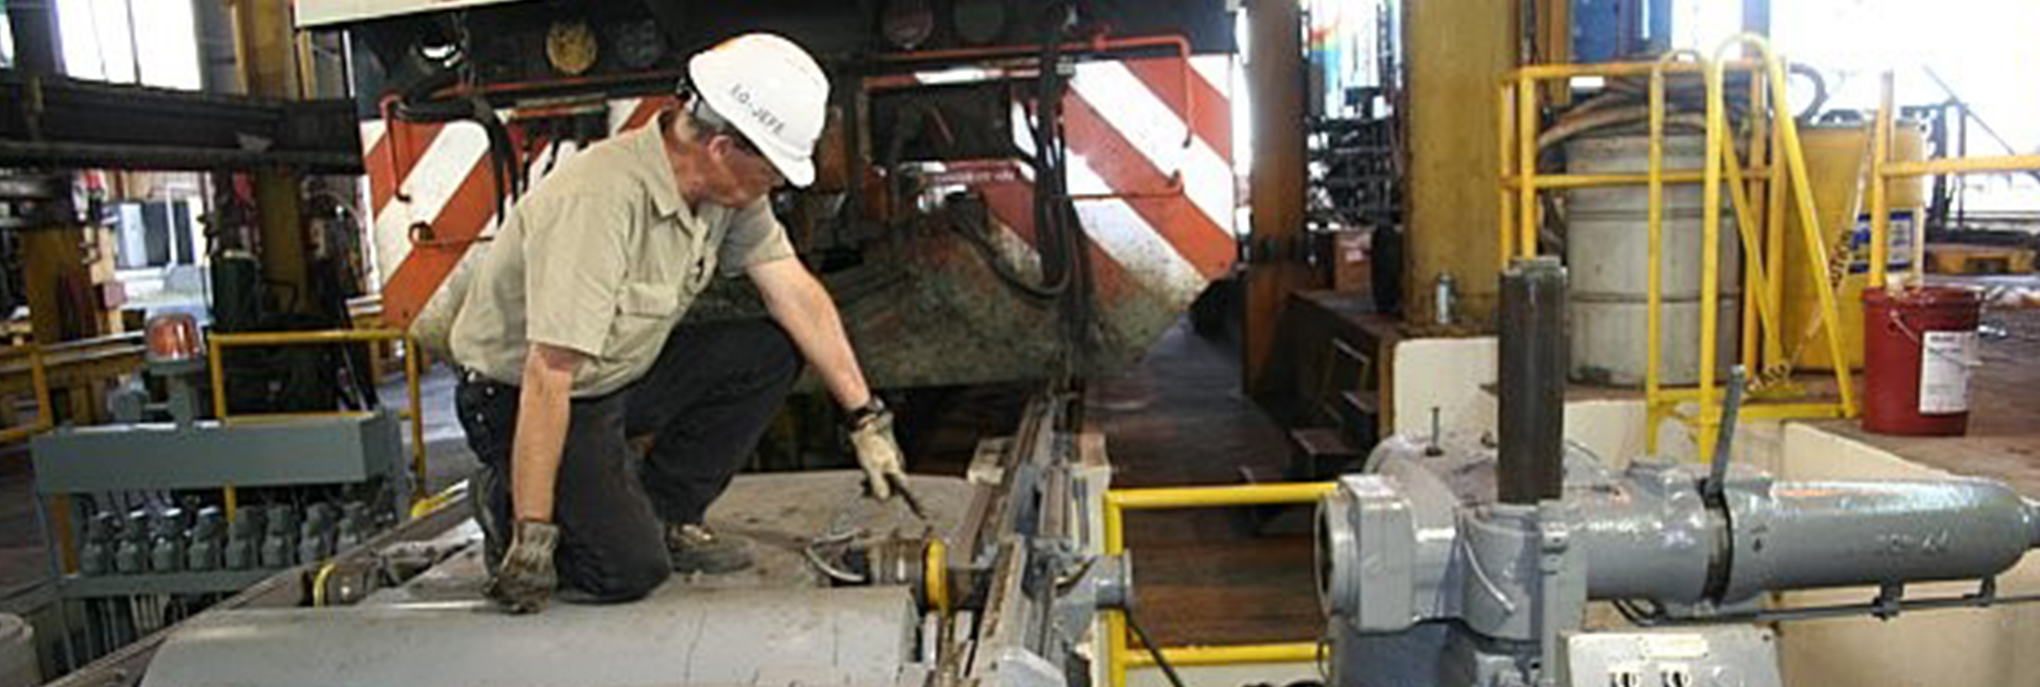 locomotive mechanic fixing locomotive equipment in maintenance shop